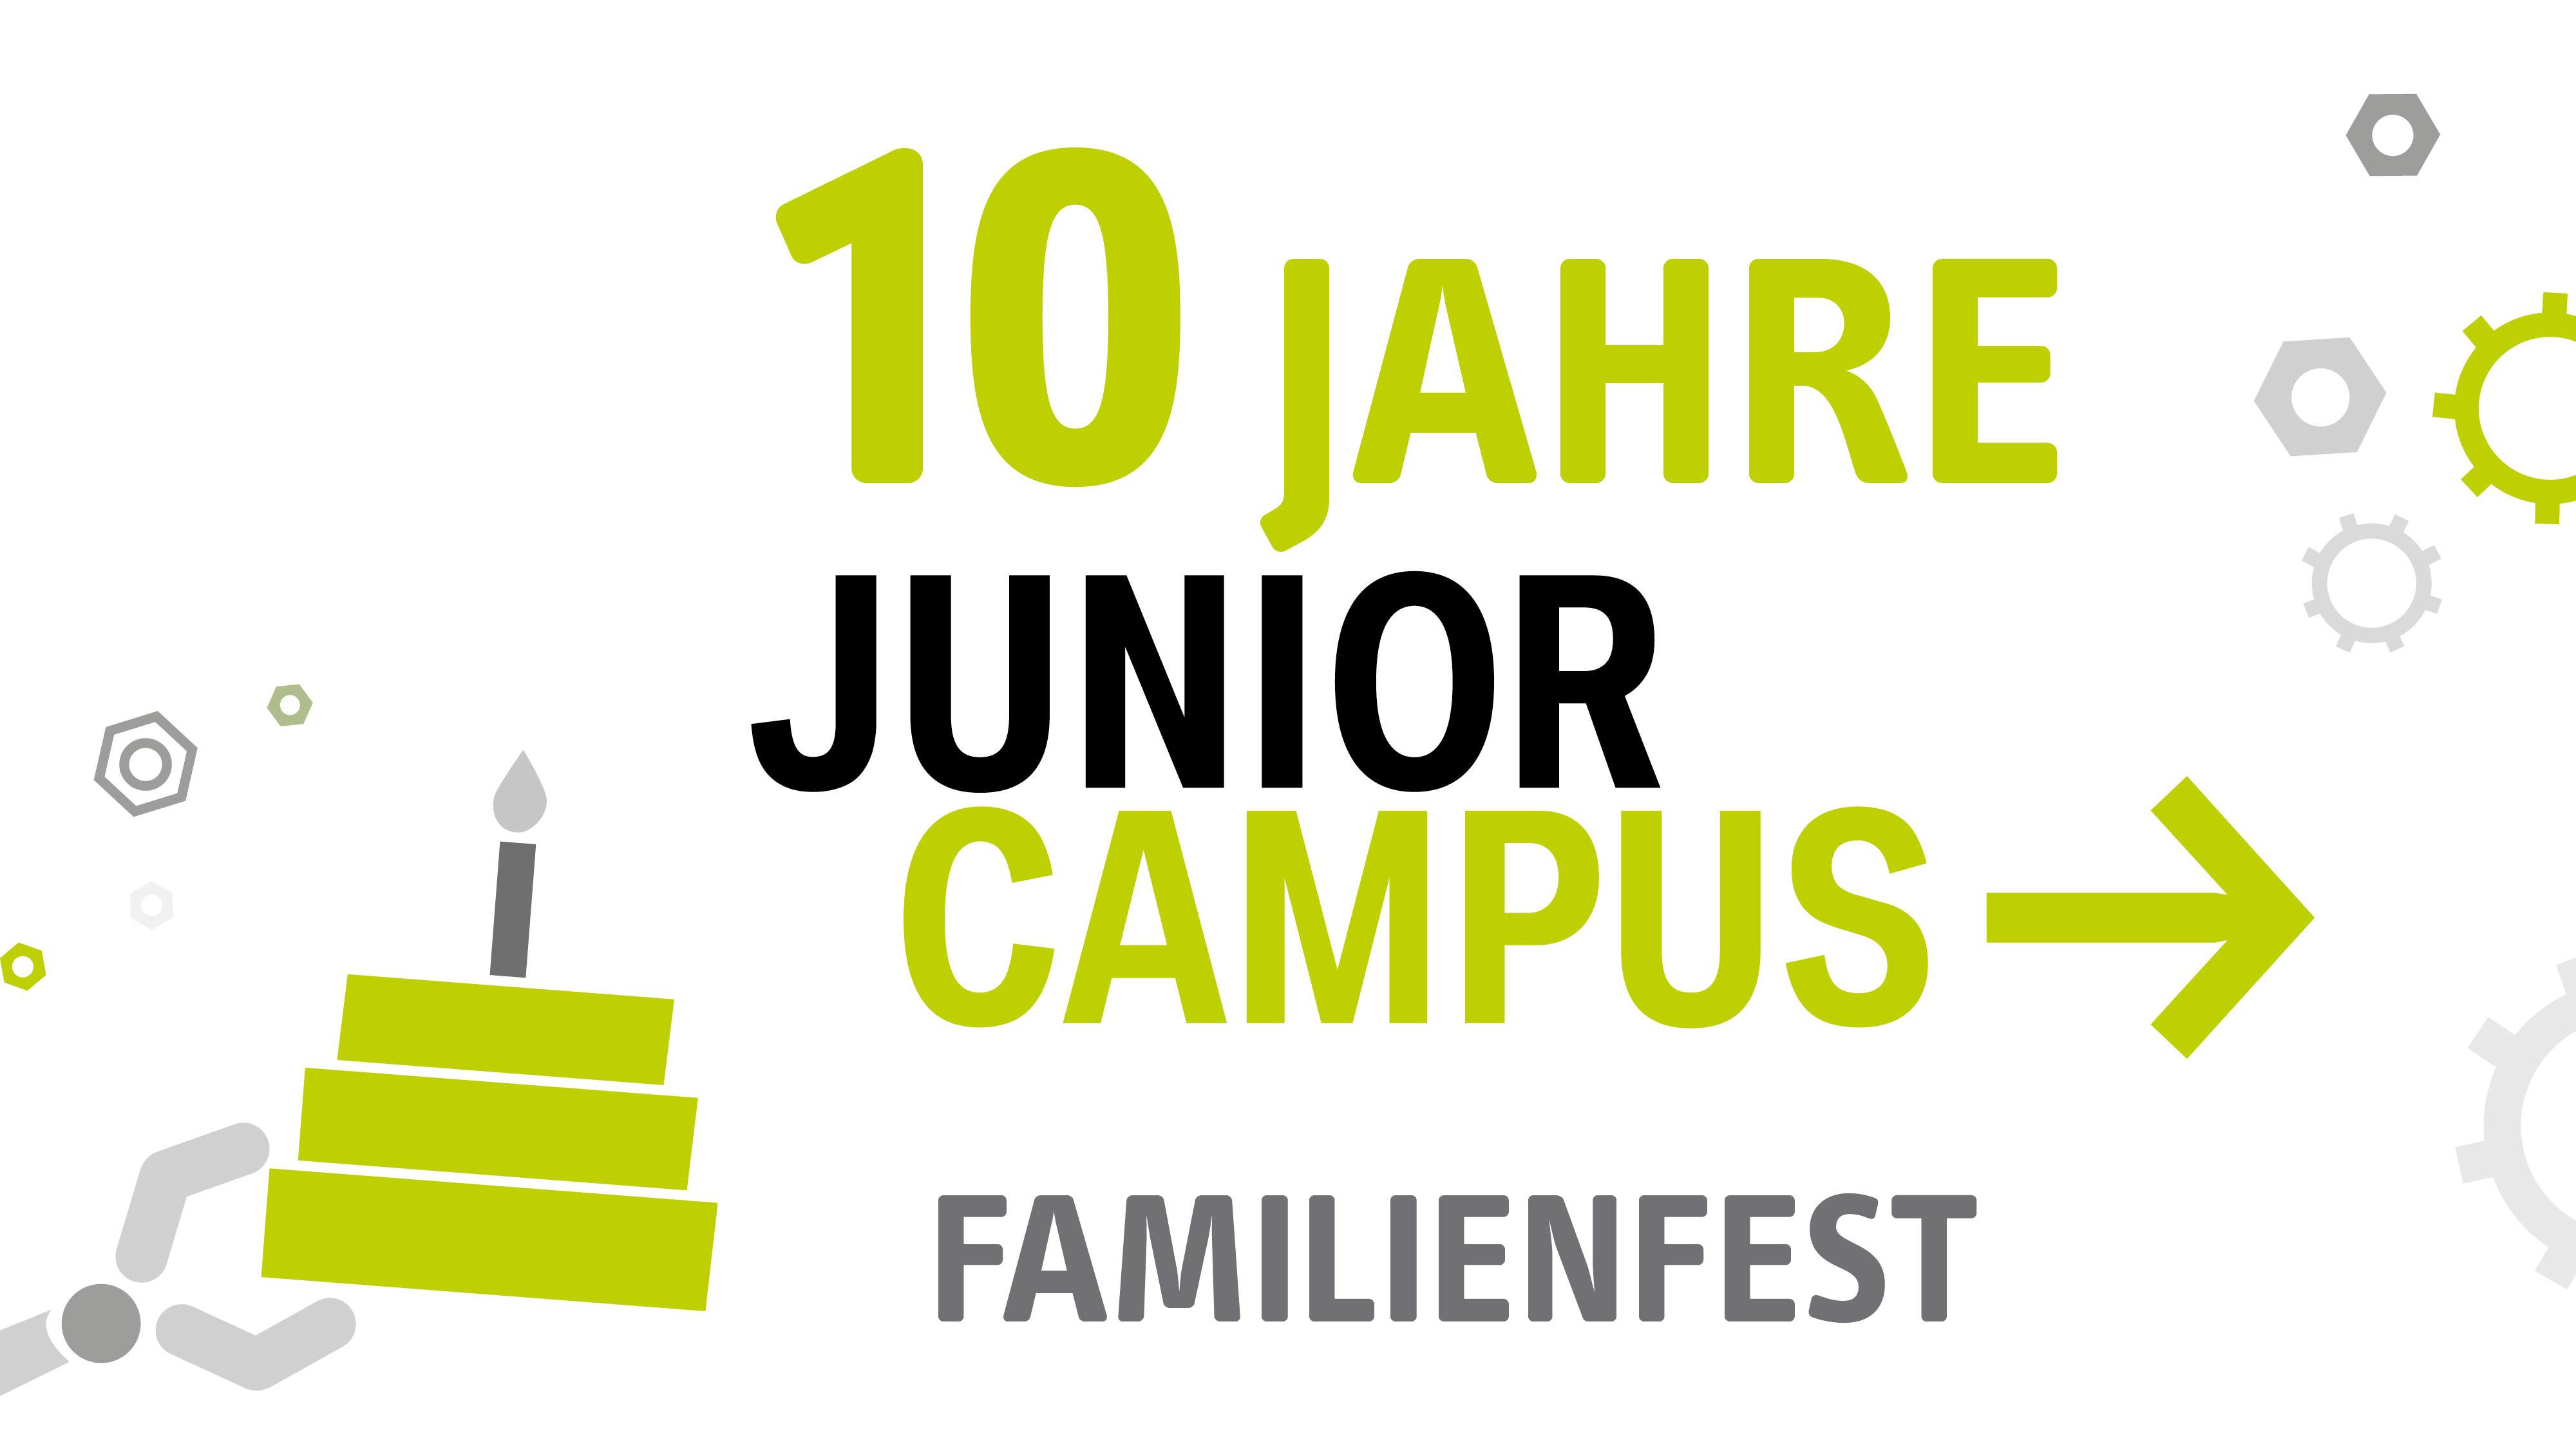 Schriftzug "10 Jahre Junior Campus Familienfest" in Grün und Schwarz, eine Roboterhand hält einen Kuchen